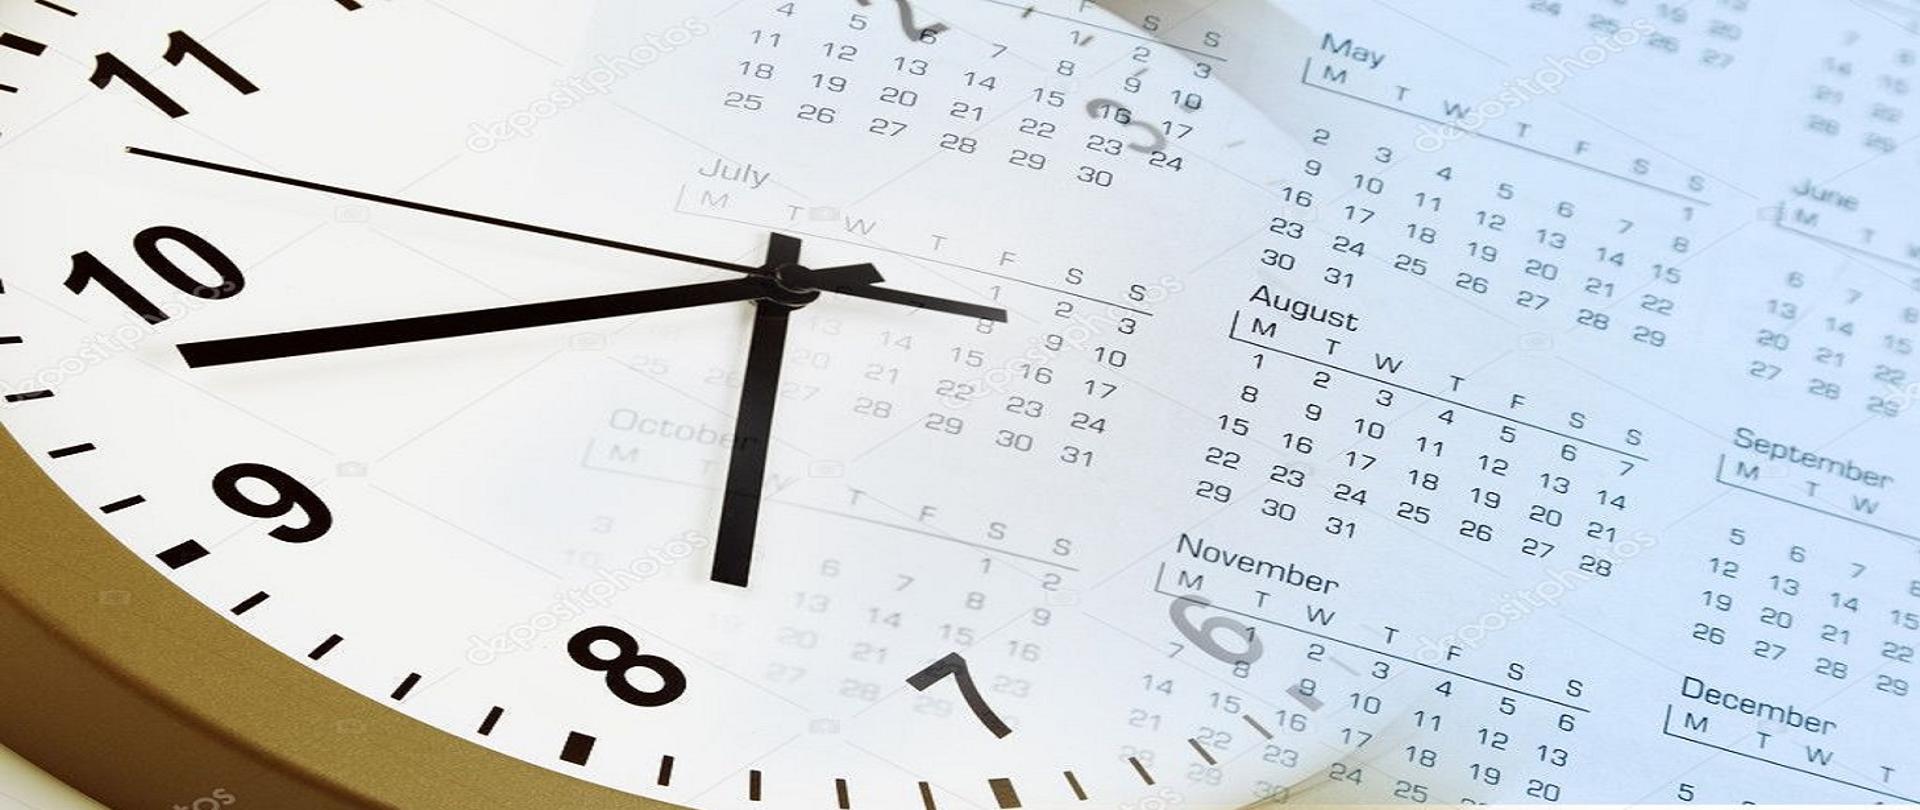 Grafika - zloty zegar na kalendarzu, zegar zmywa sie z tłem kalendarza